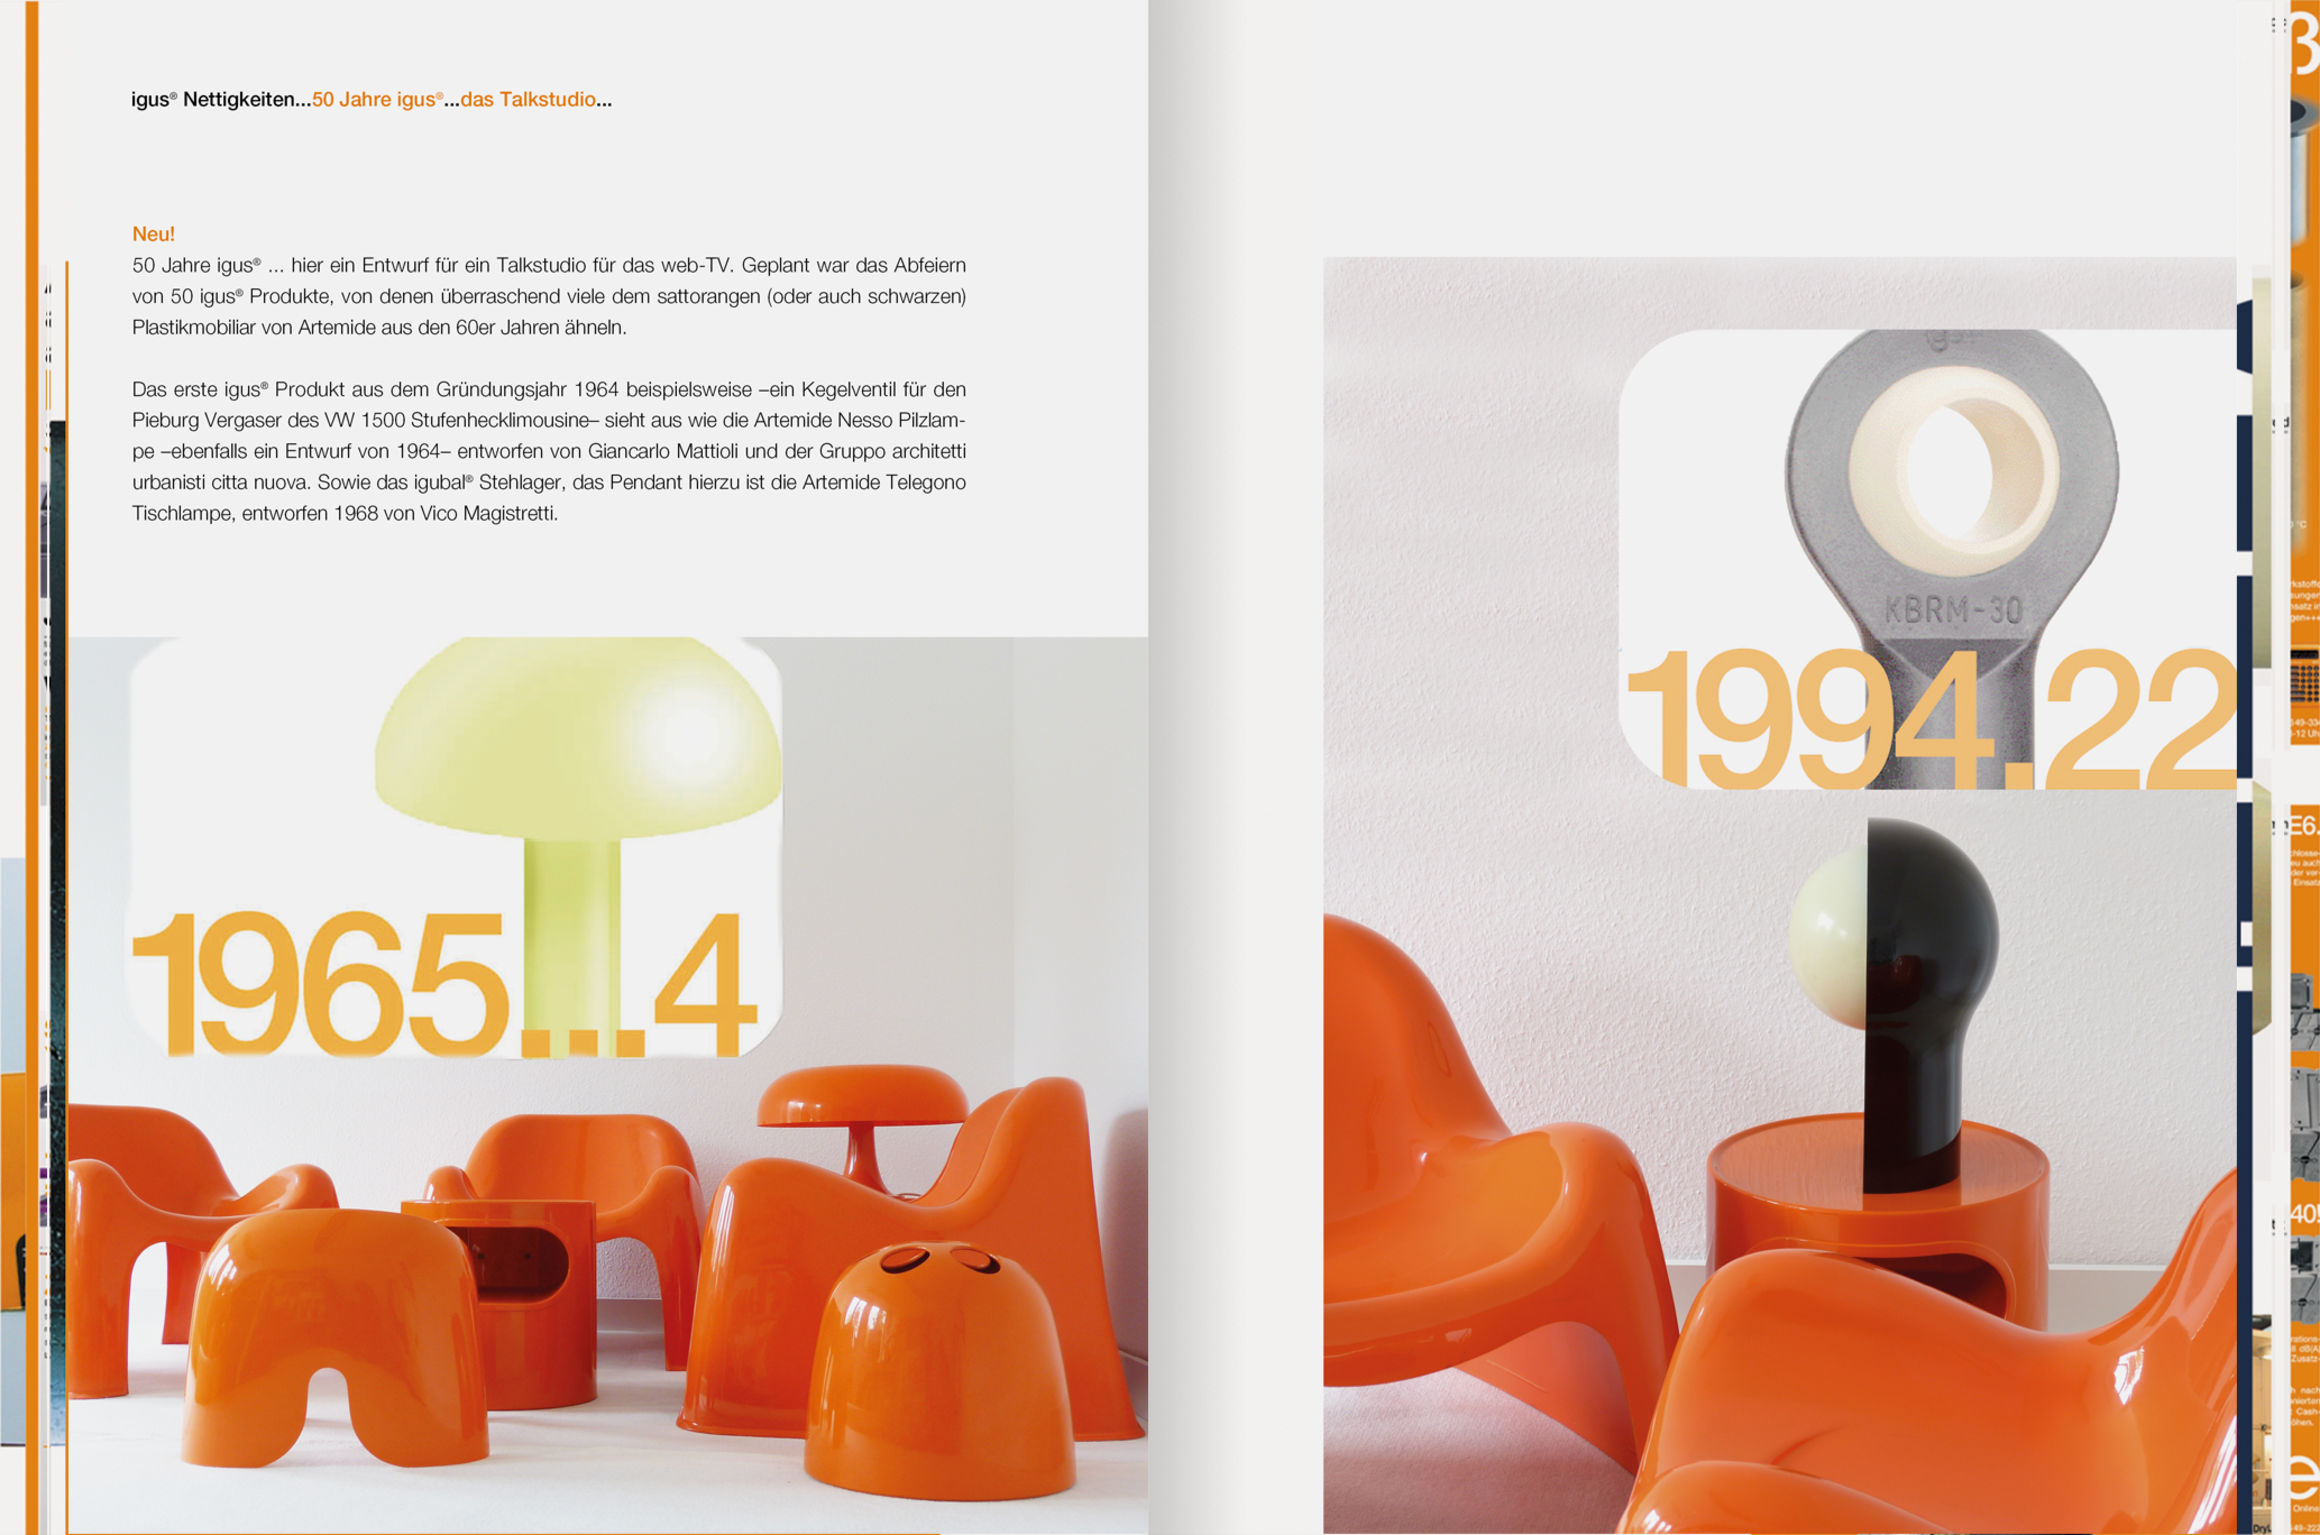 igus® corporate design manual